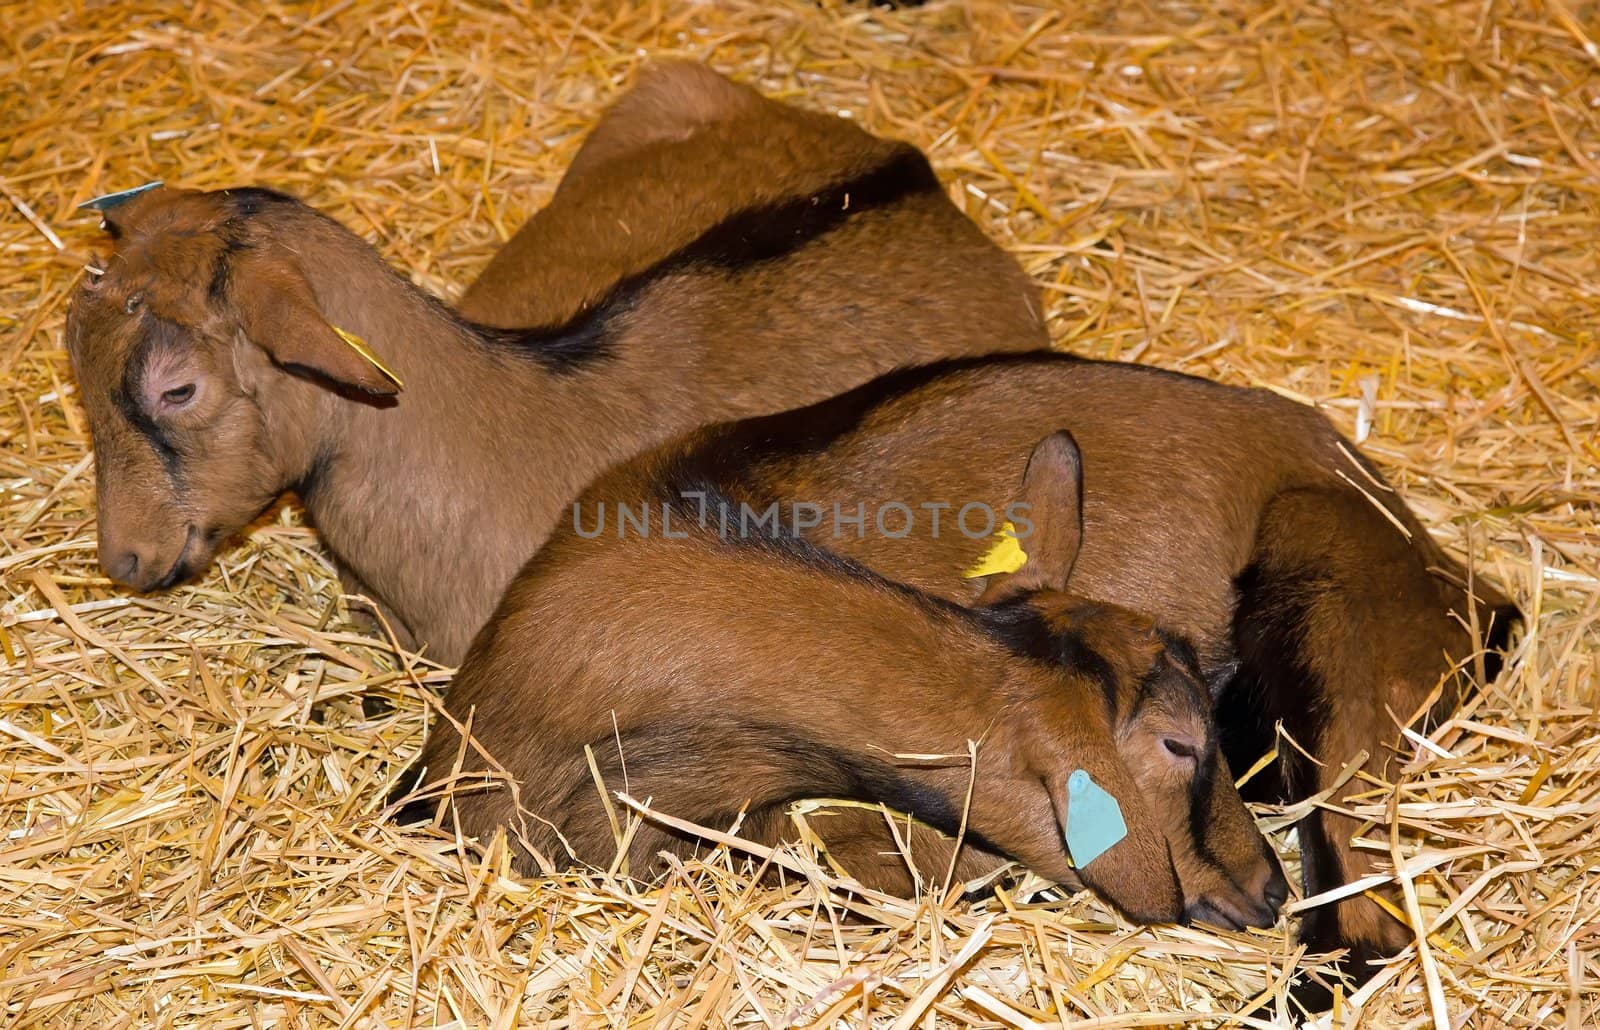 goats resting on straw by neko92vl